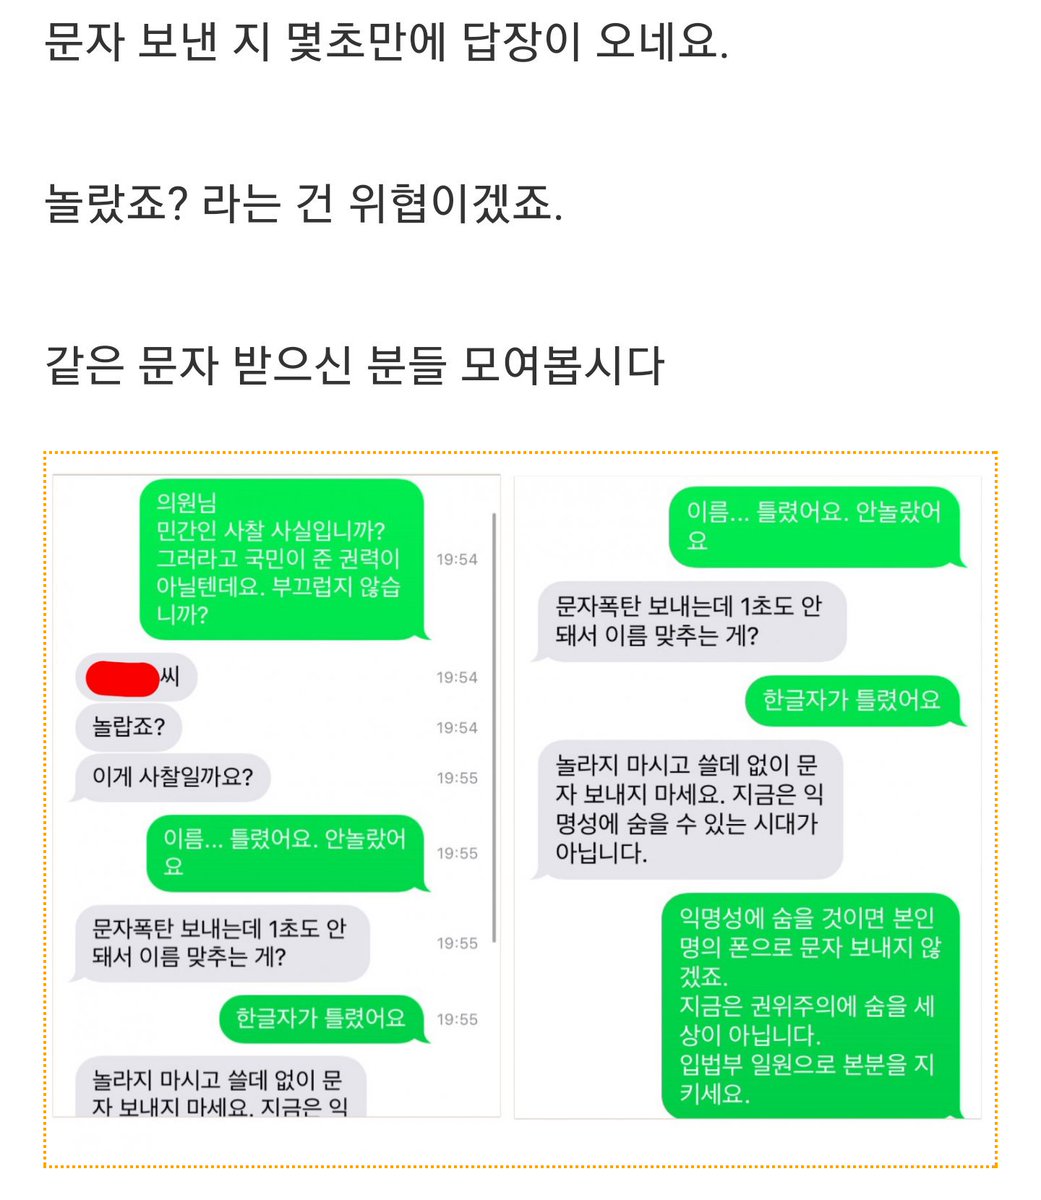 민경욱 이름을 문자 자유한국당 실명을 자유당 민주당 kgy72